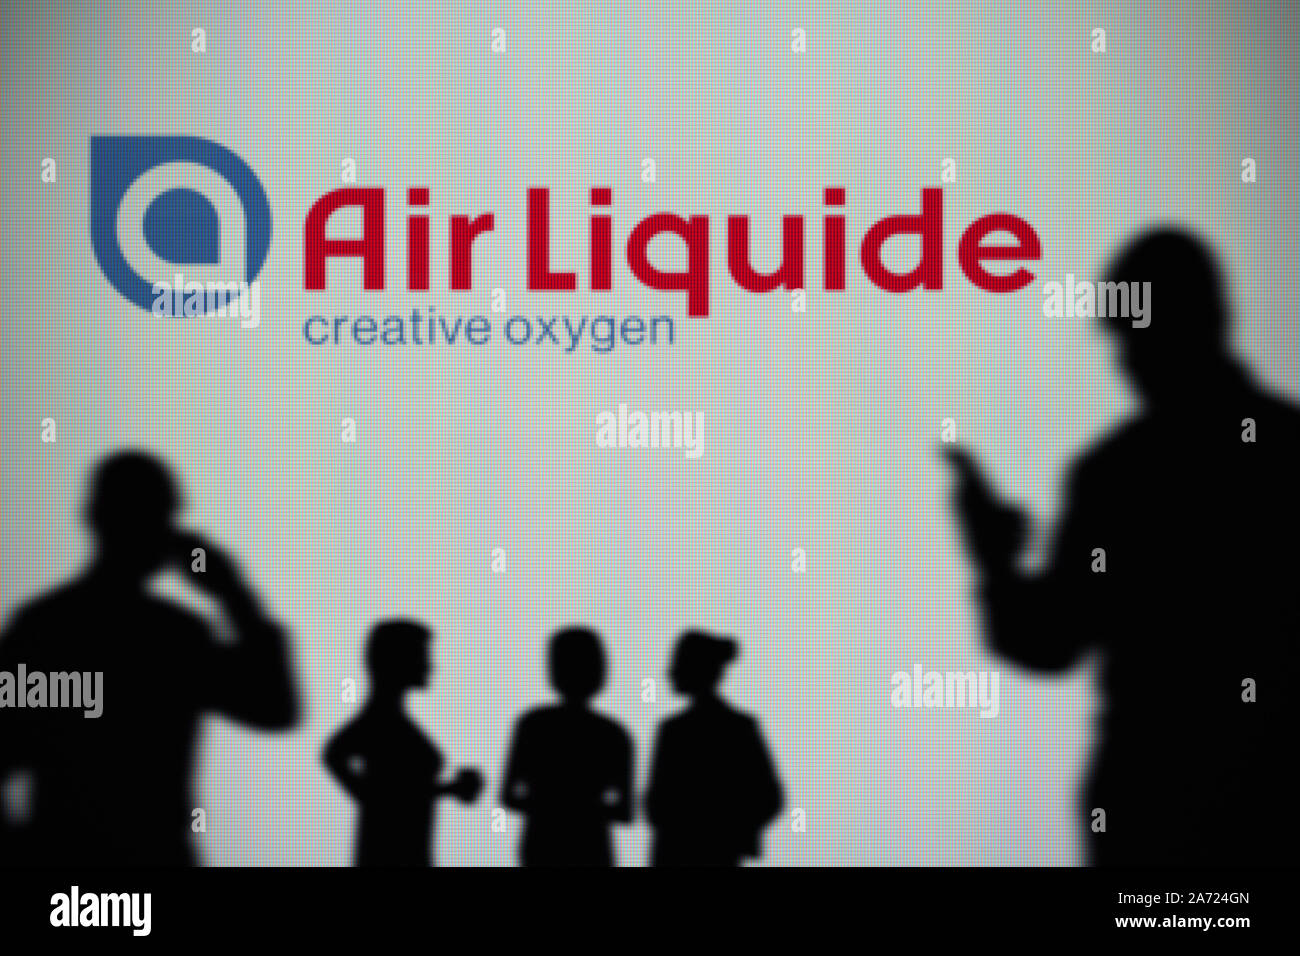 Le logo d'Air Liquide est visible sur un écran LED à l'arrière-plan tandis qu'une silhouette personne utilise un smartphone (usage éditorial uniquement) Banque D'Images